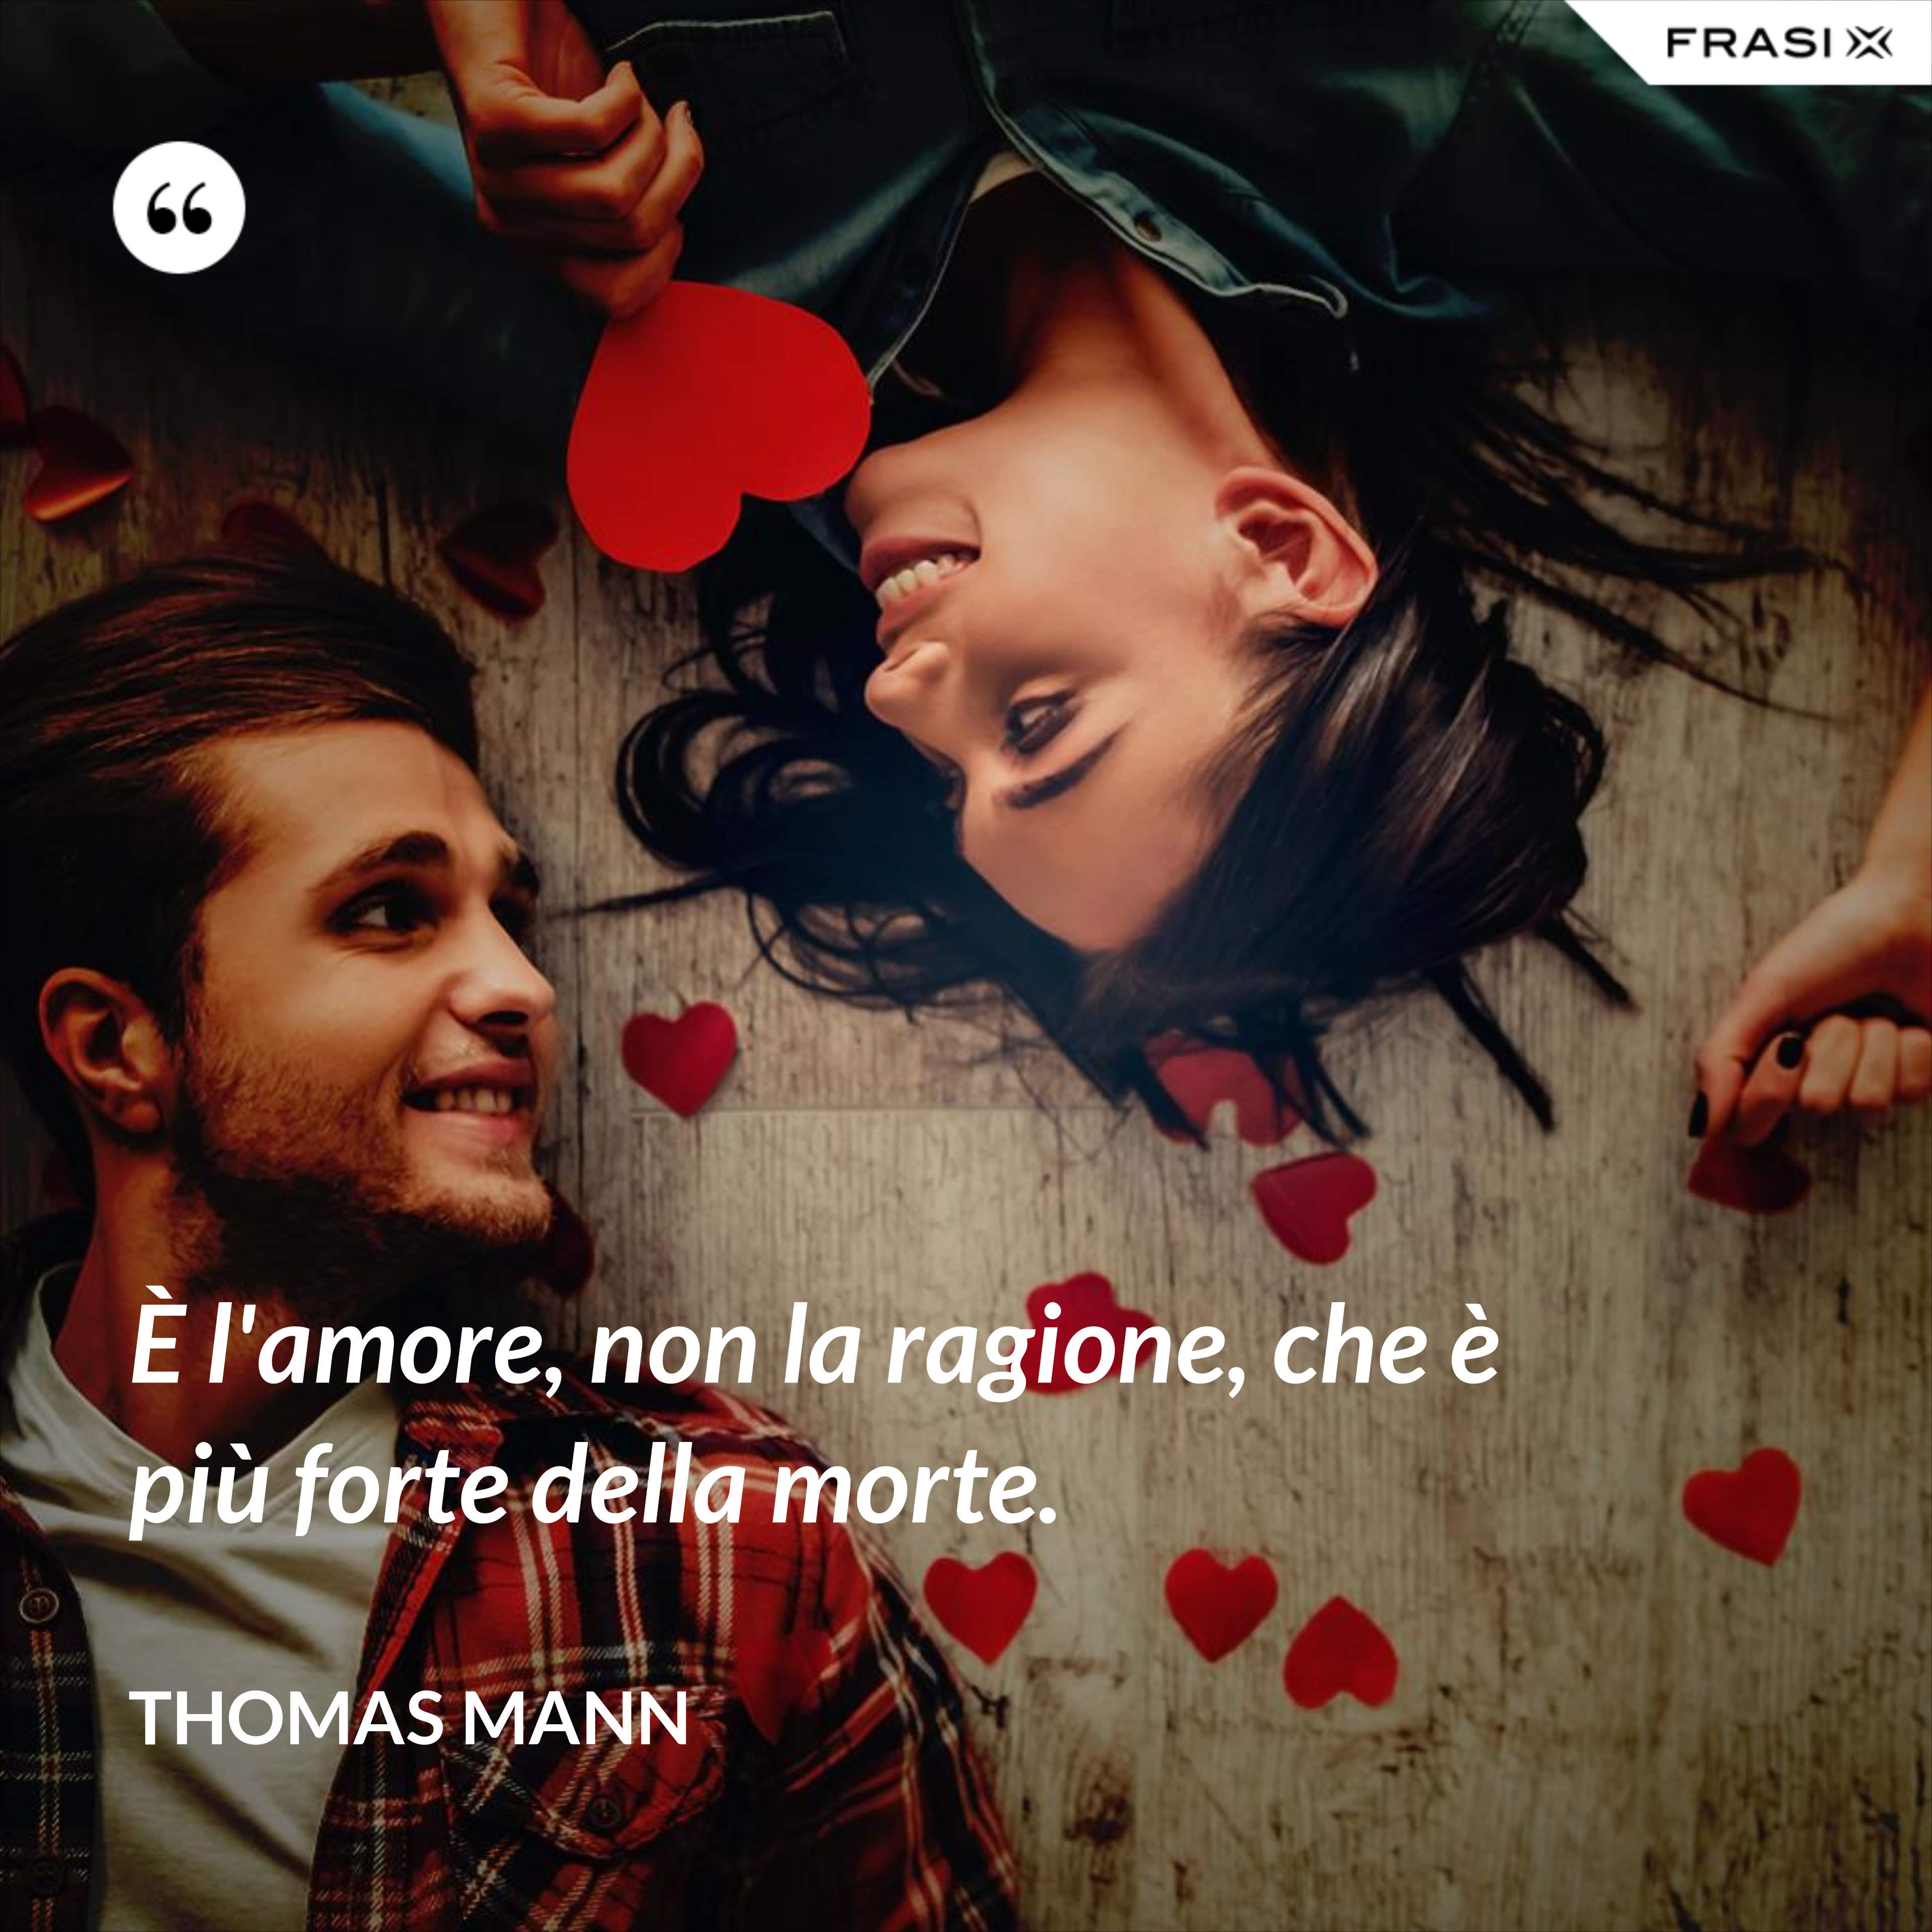 È l'amore, non la ragione, che è più forte della morte. - Thomas Mann